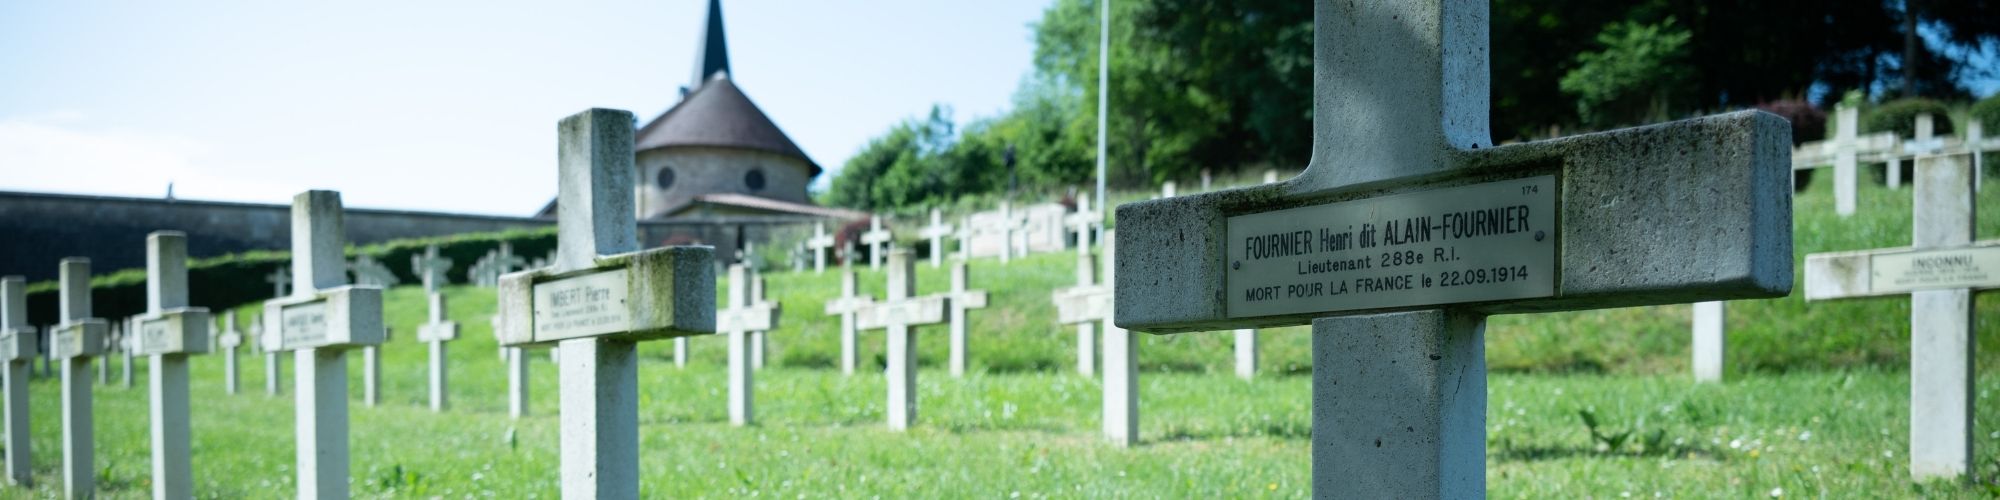 Photo du cimetière dans lequel est enterré Alain Fournier.